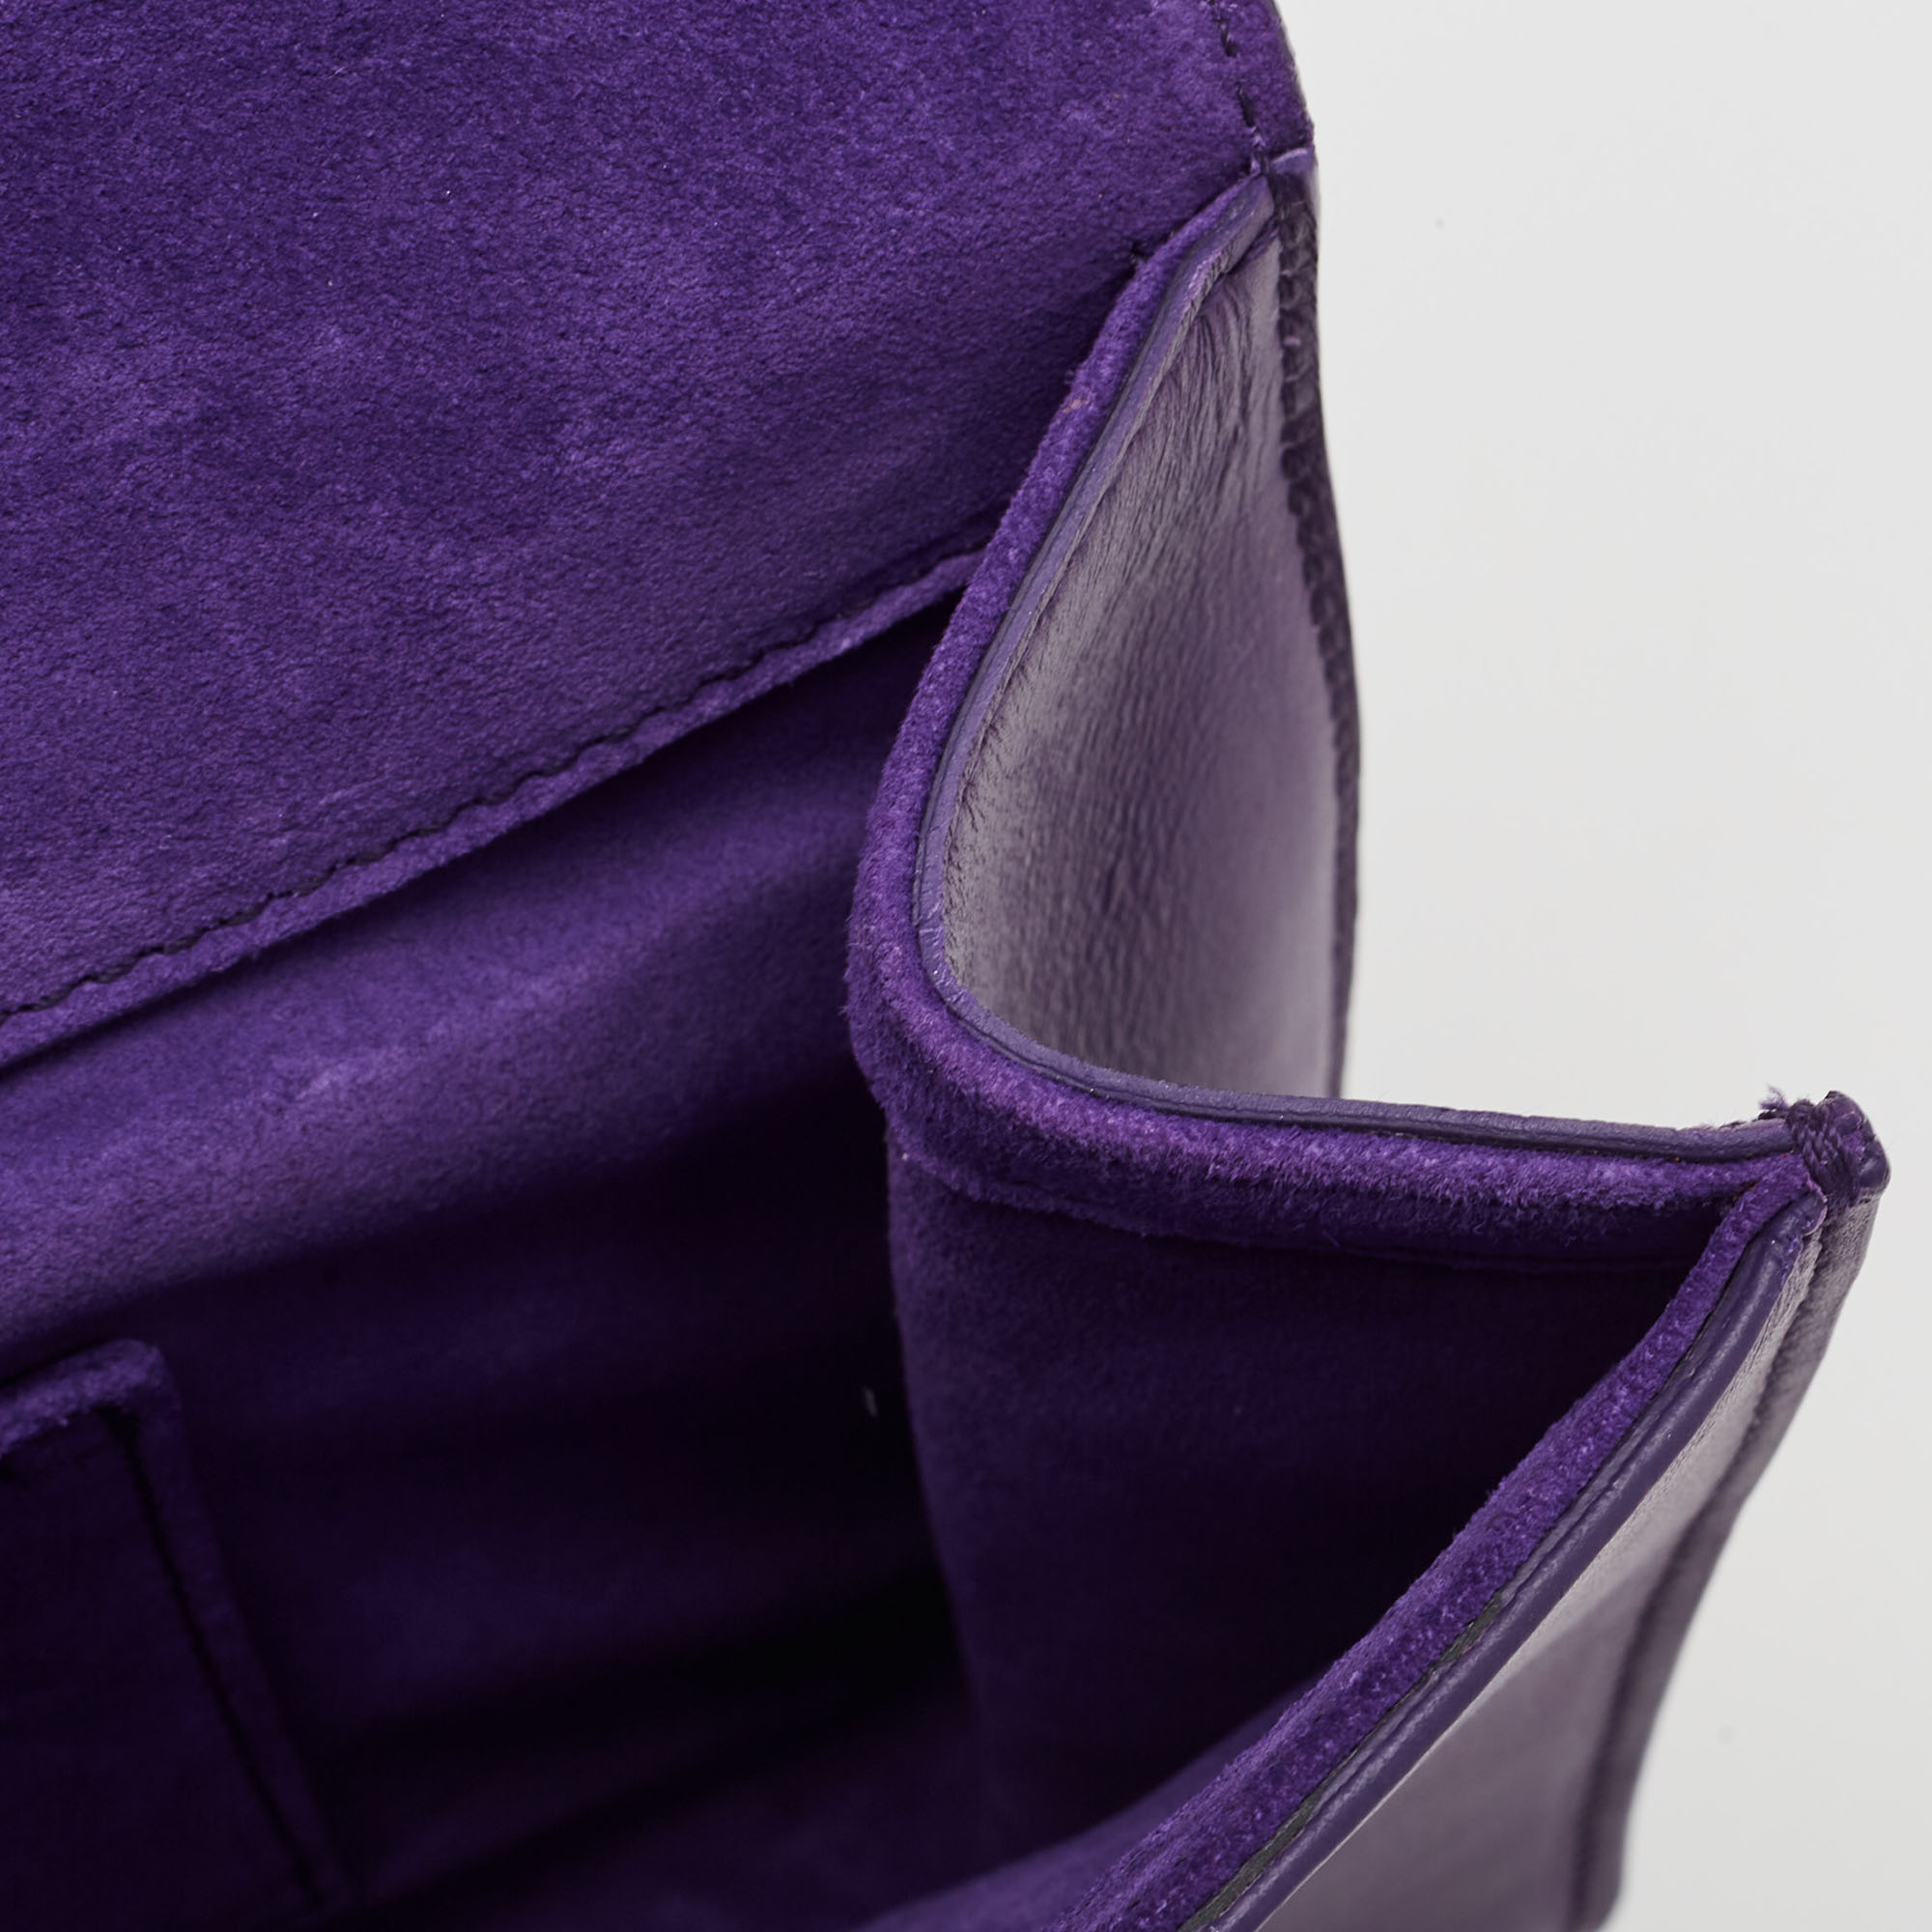 Saint Laurent Purple Leather Y-Ligne Clutch